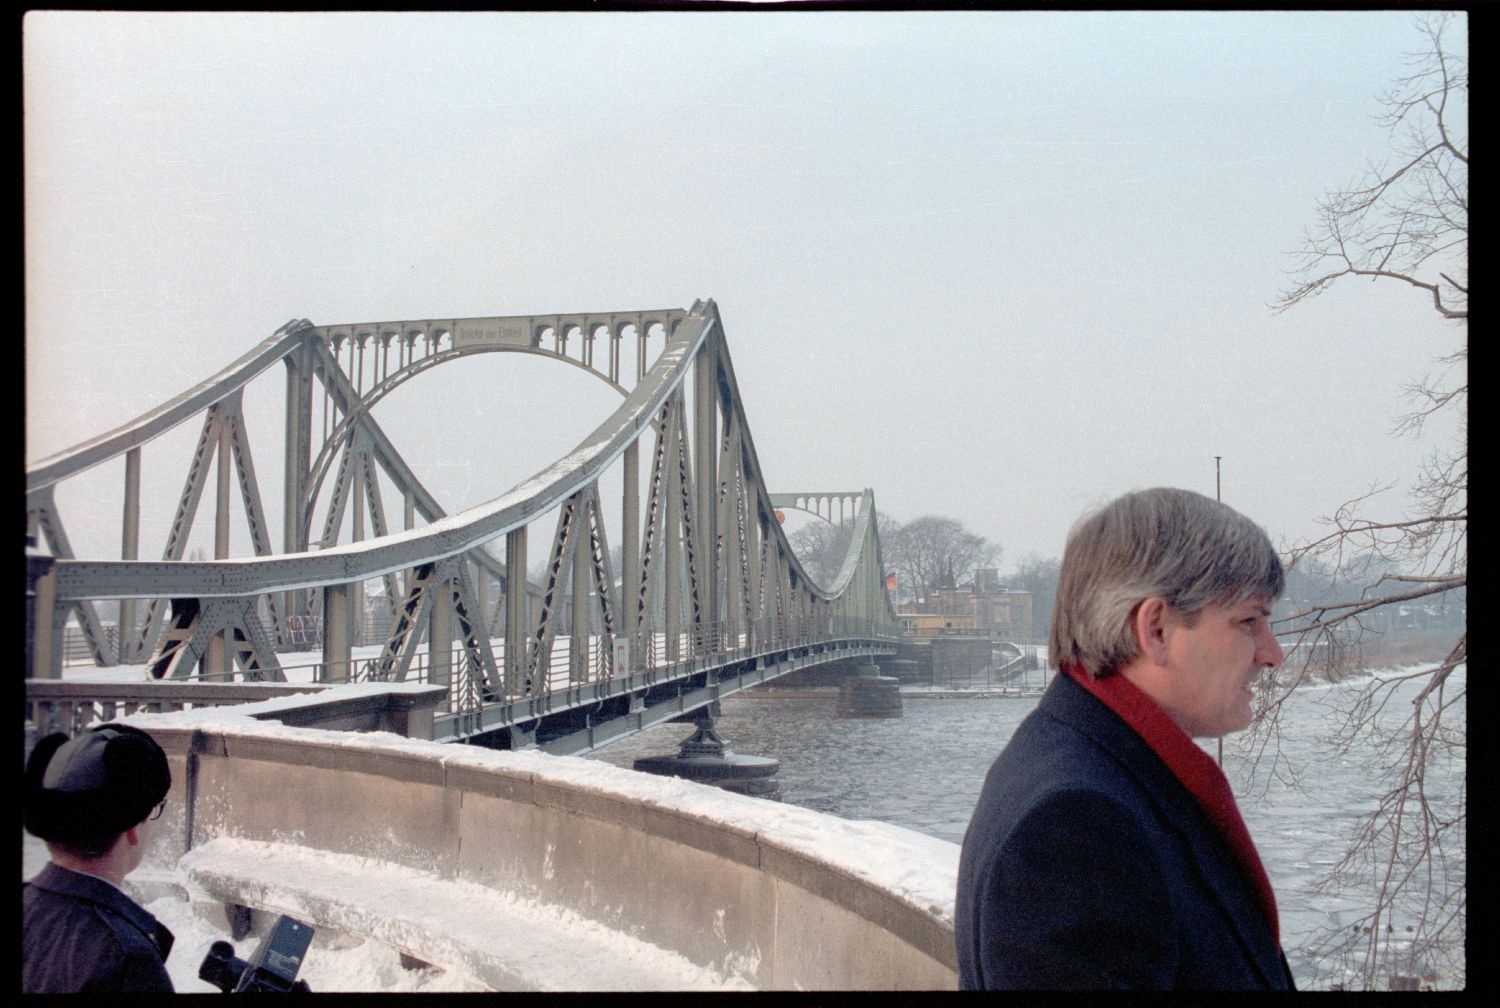 Fotografie: Agentenaustausch auf der Glienicker Brücke